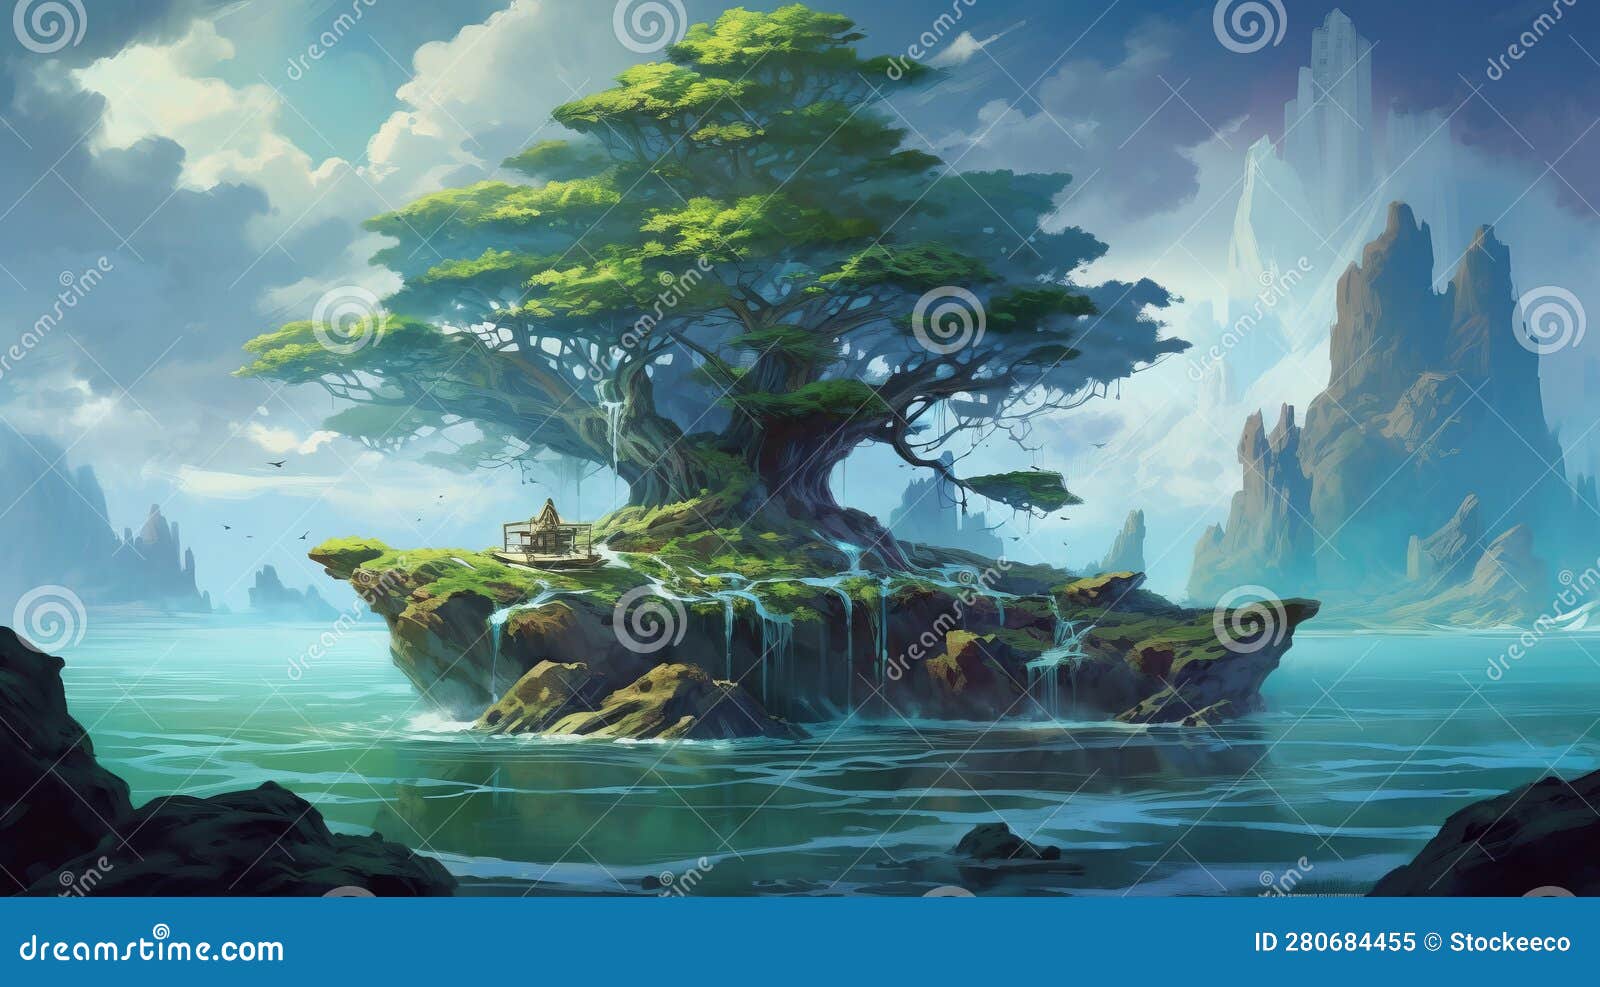 Fantasy Landscape Wallpaper (76+ images)